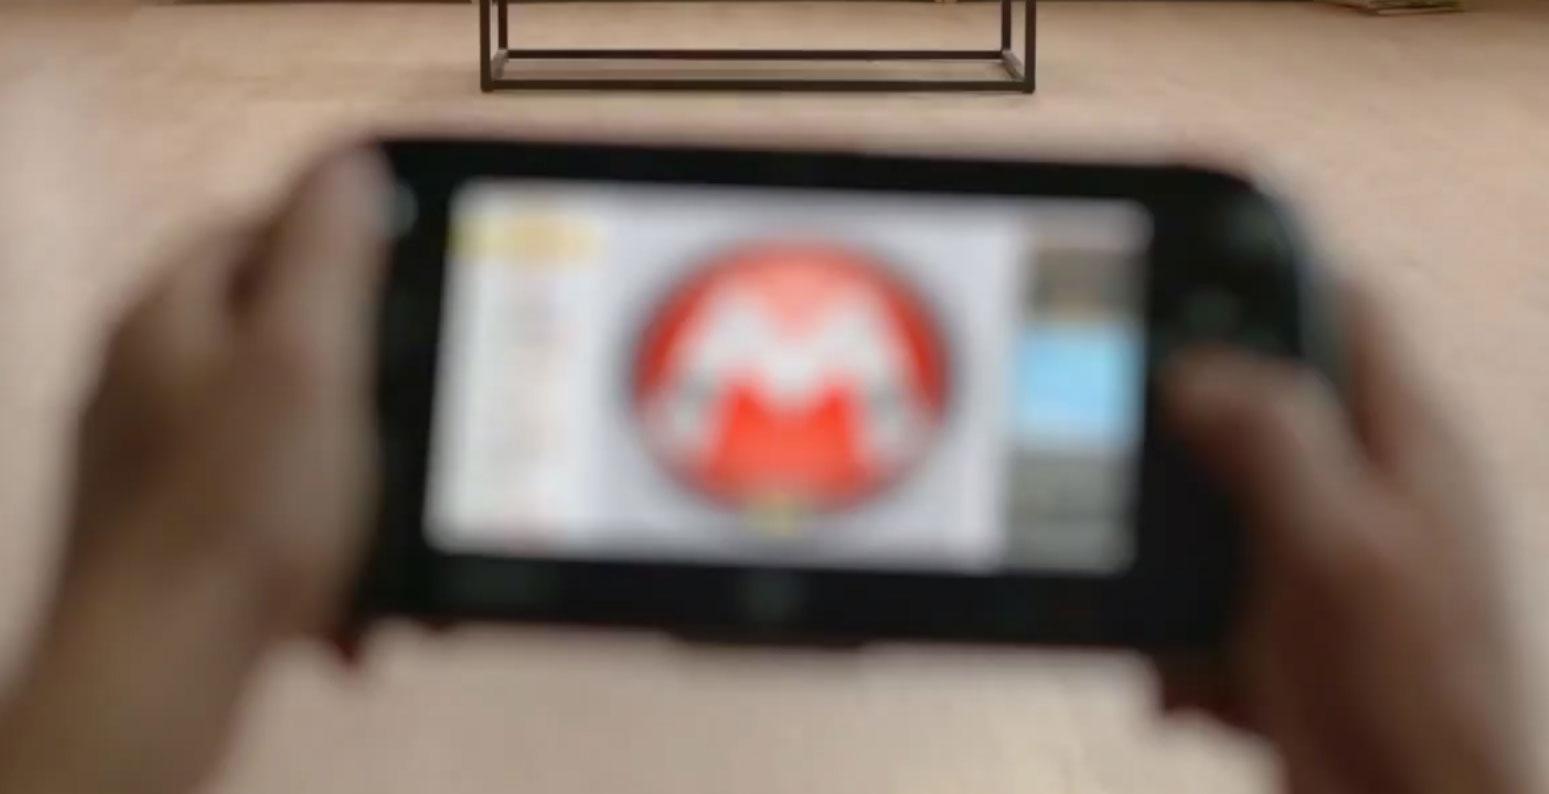 Le mystérieux GamePad, doté d'un écran qui semble plus grand.